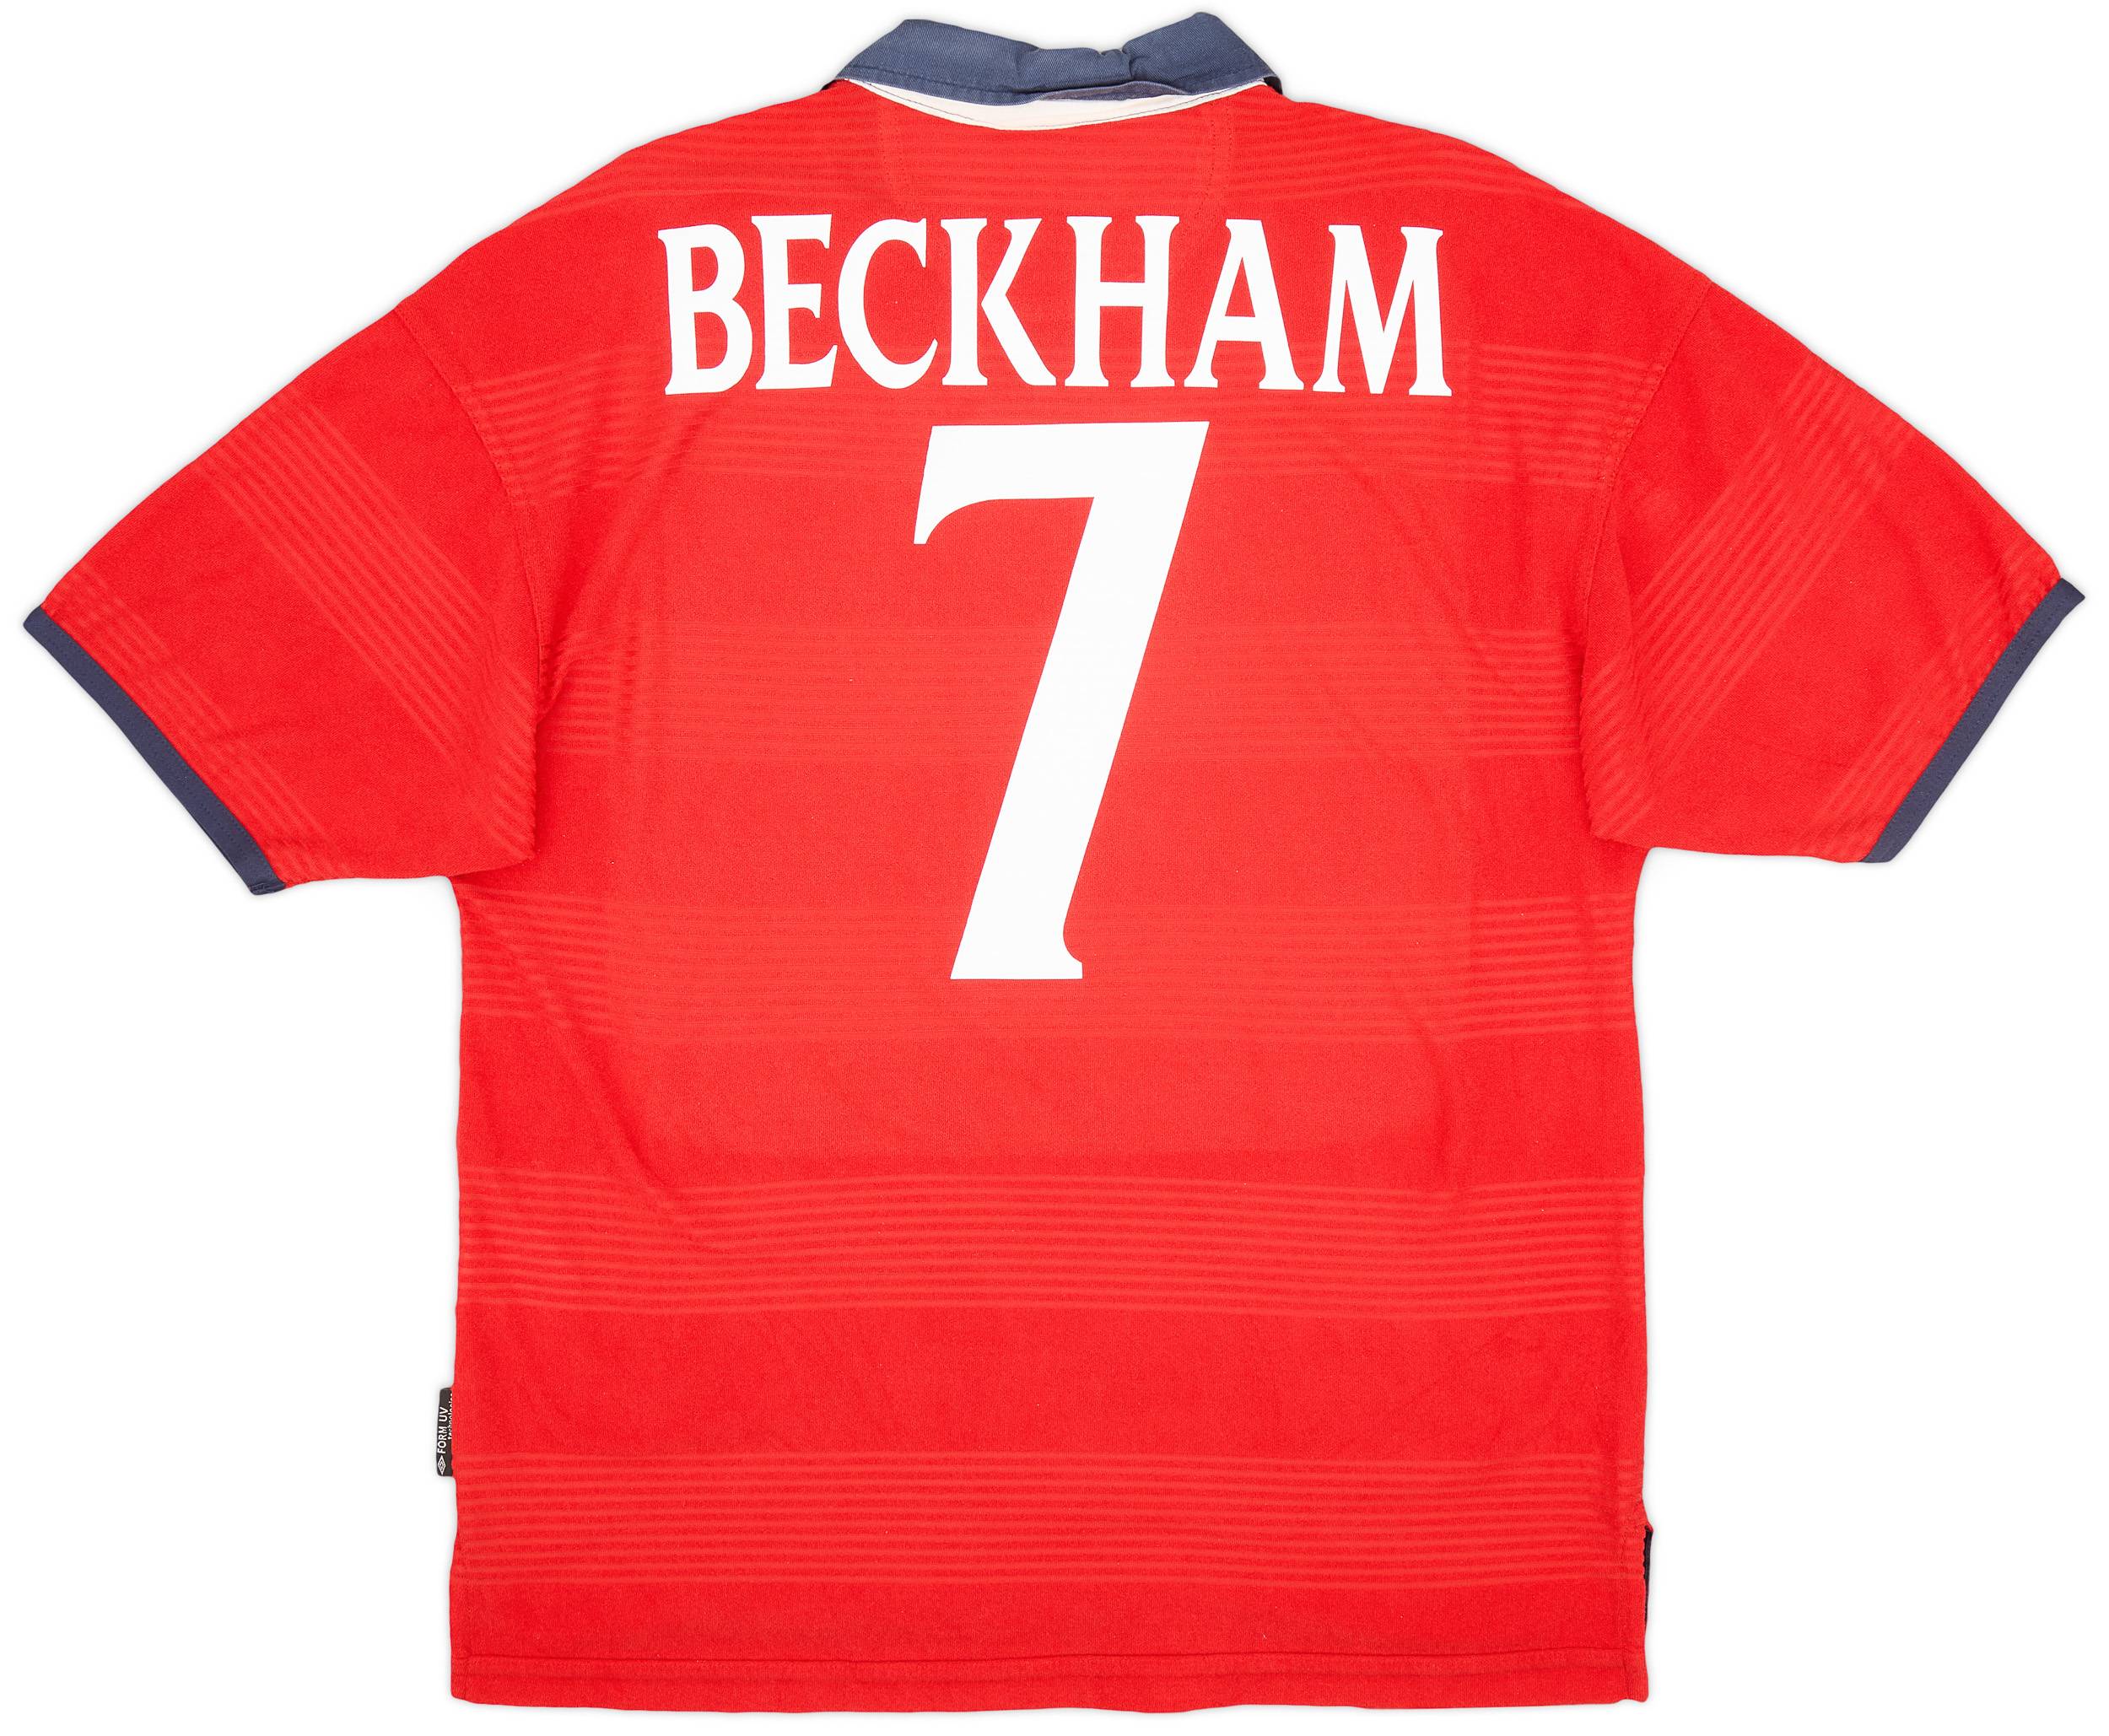 1999-01 England Away Shirt Beckham #7 - 9/10 - (M)